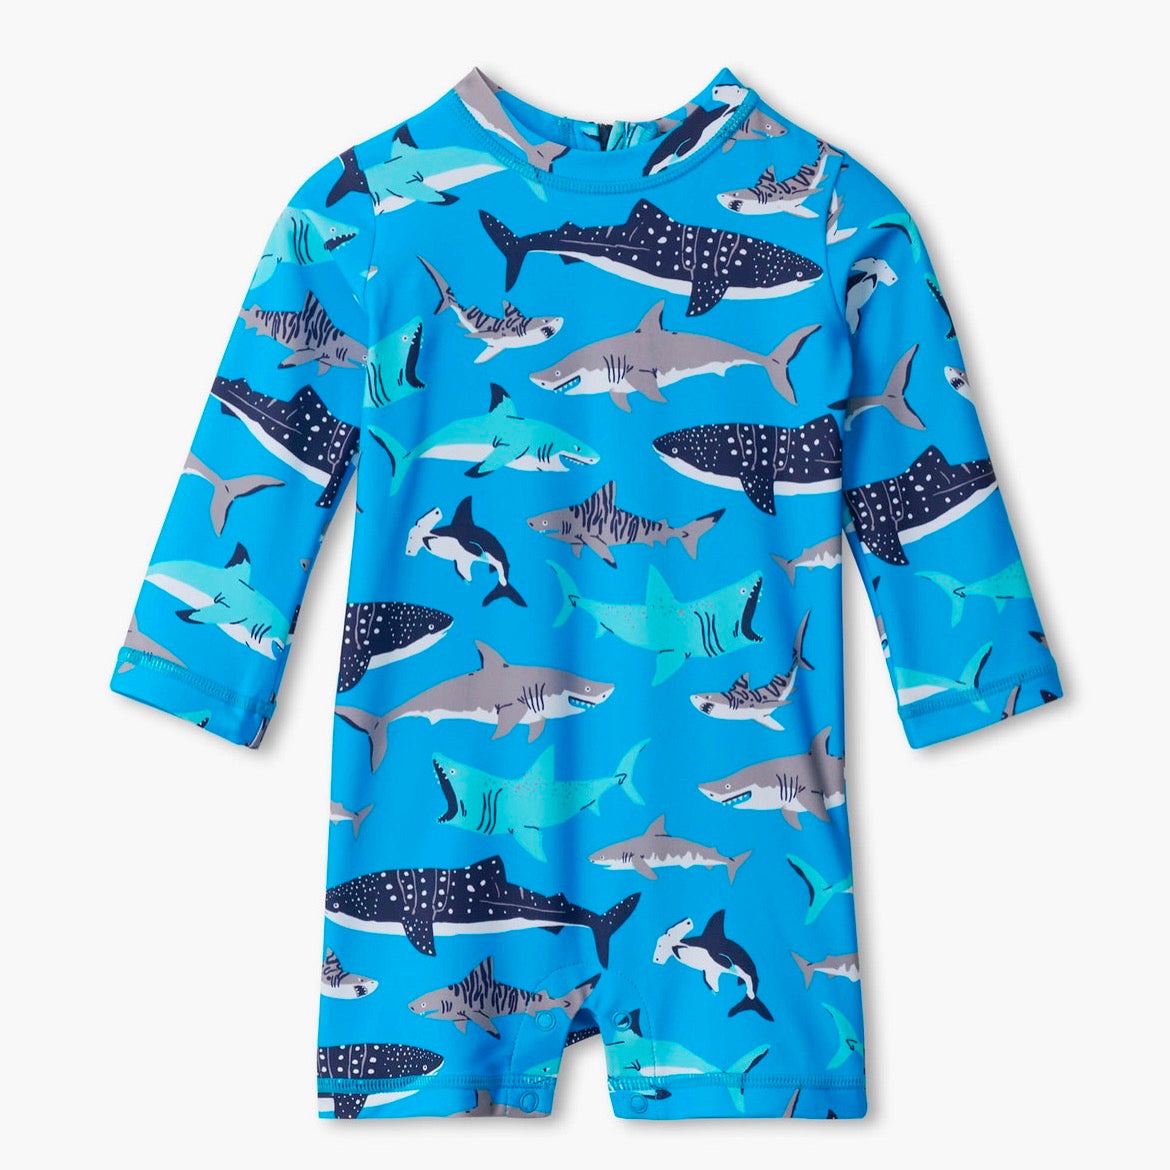 Hatley Infant Rashguard S22tsi908b Shark Clothing 6-9M / Blue,6-12M / Blue,9-12M / Blue,12-18M / Blue,18-24M / Blue